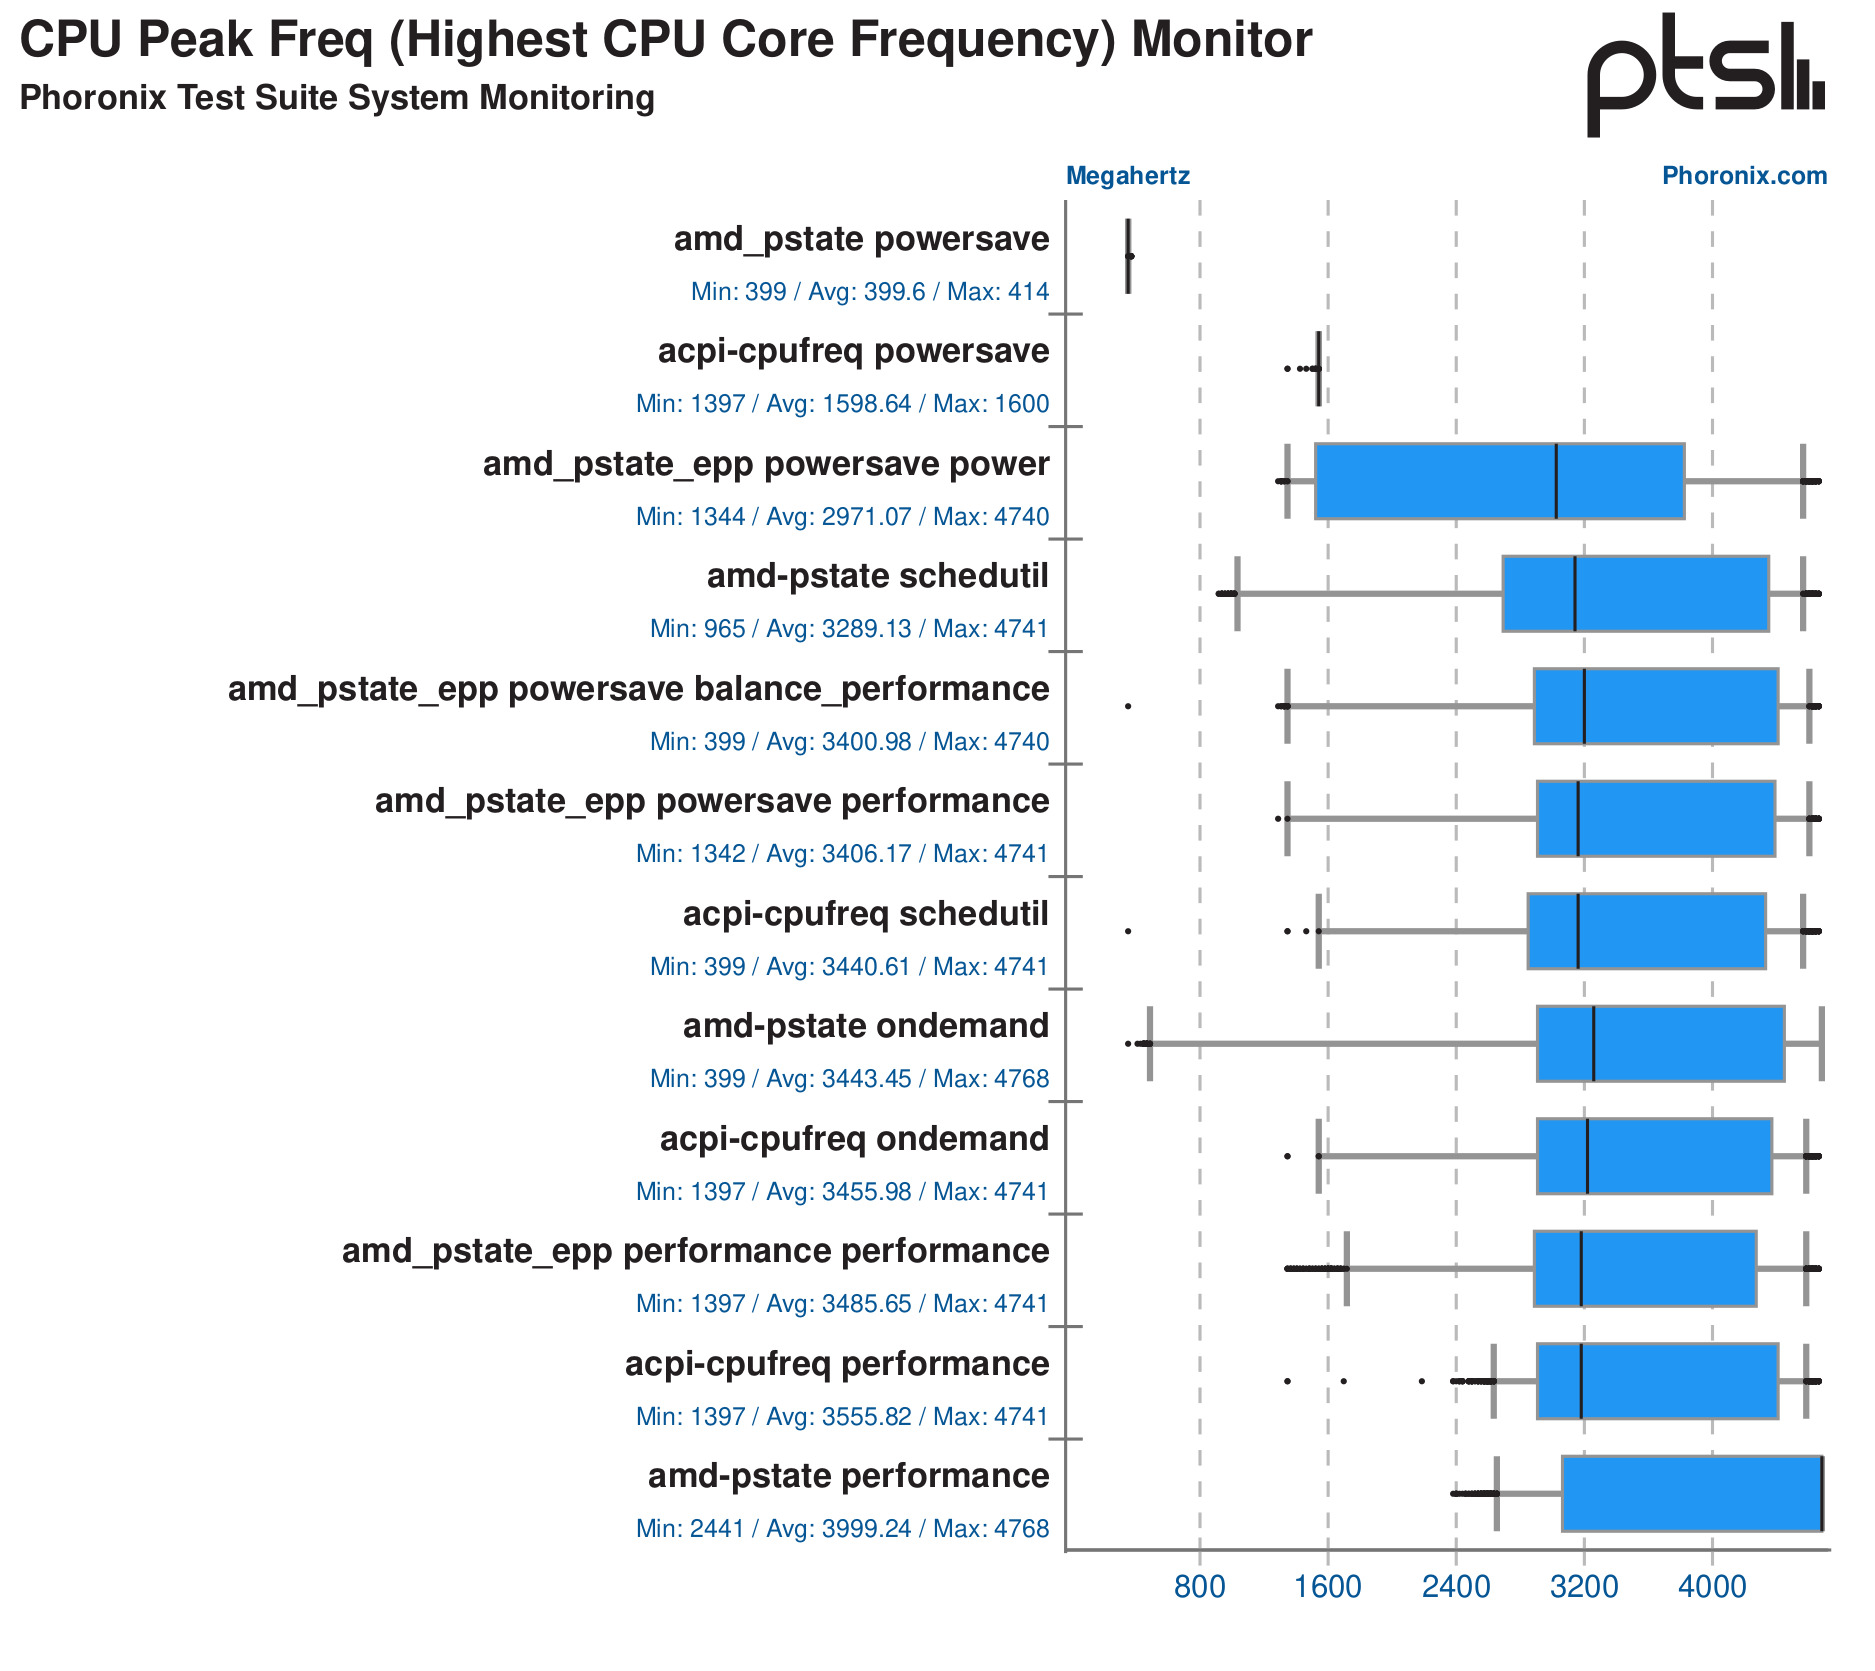 cpu-peak-freq-highest-cpu-core-frequency-monitor-ptssm.jpg